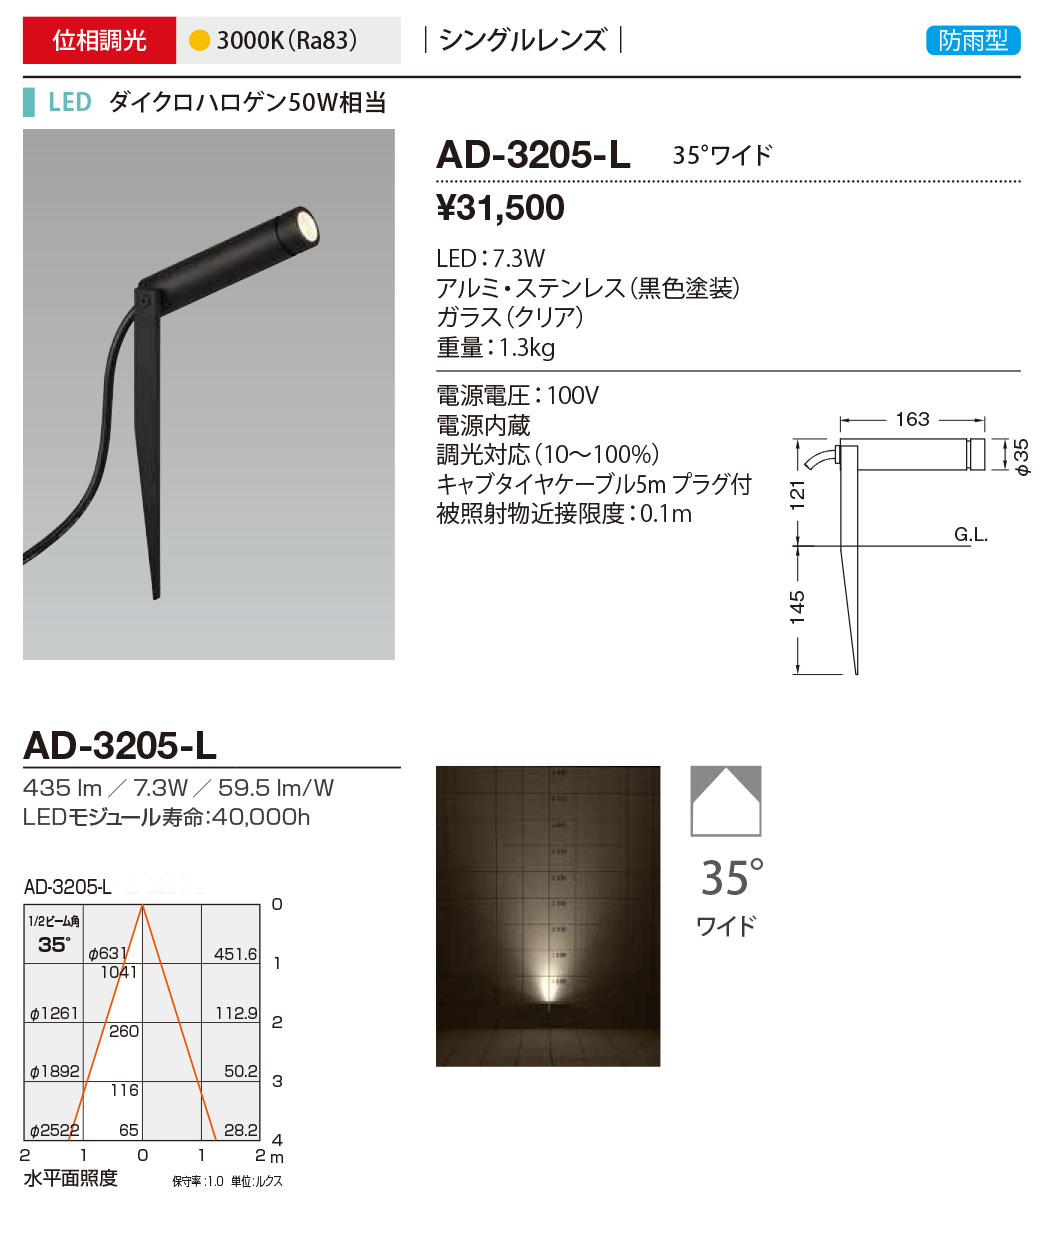 AD-3205-L RcƖ OX|bgCg F LED dF  35x